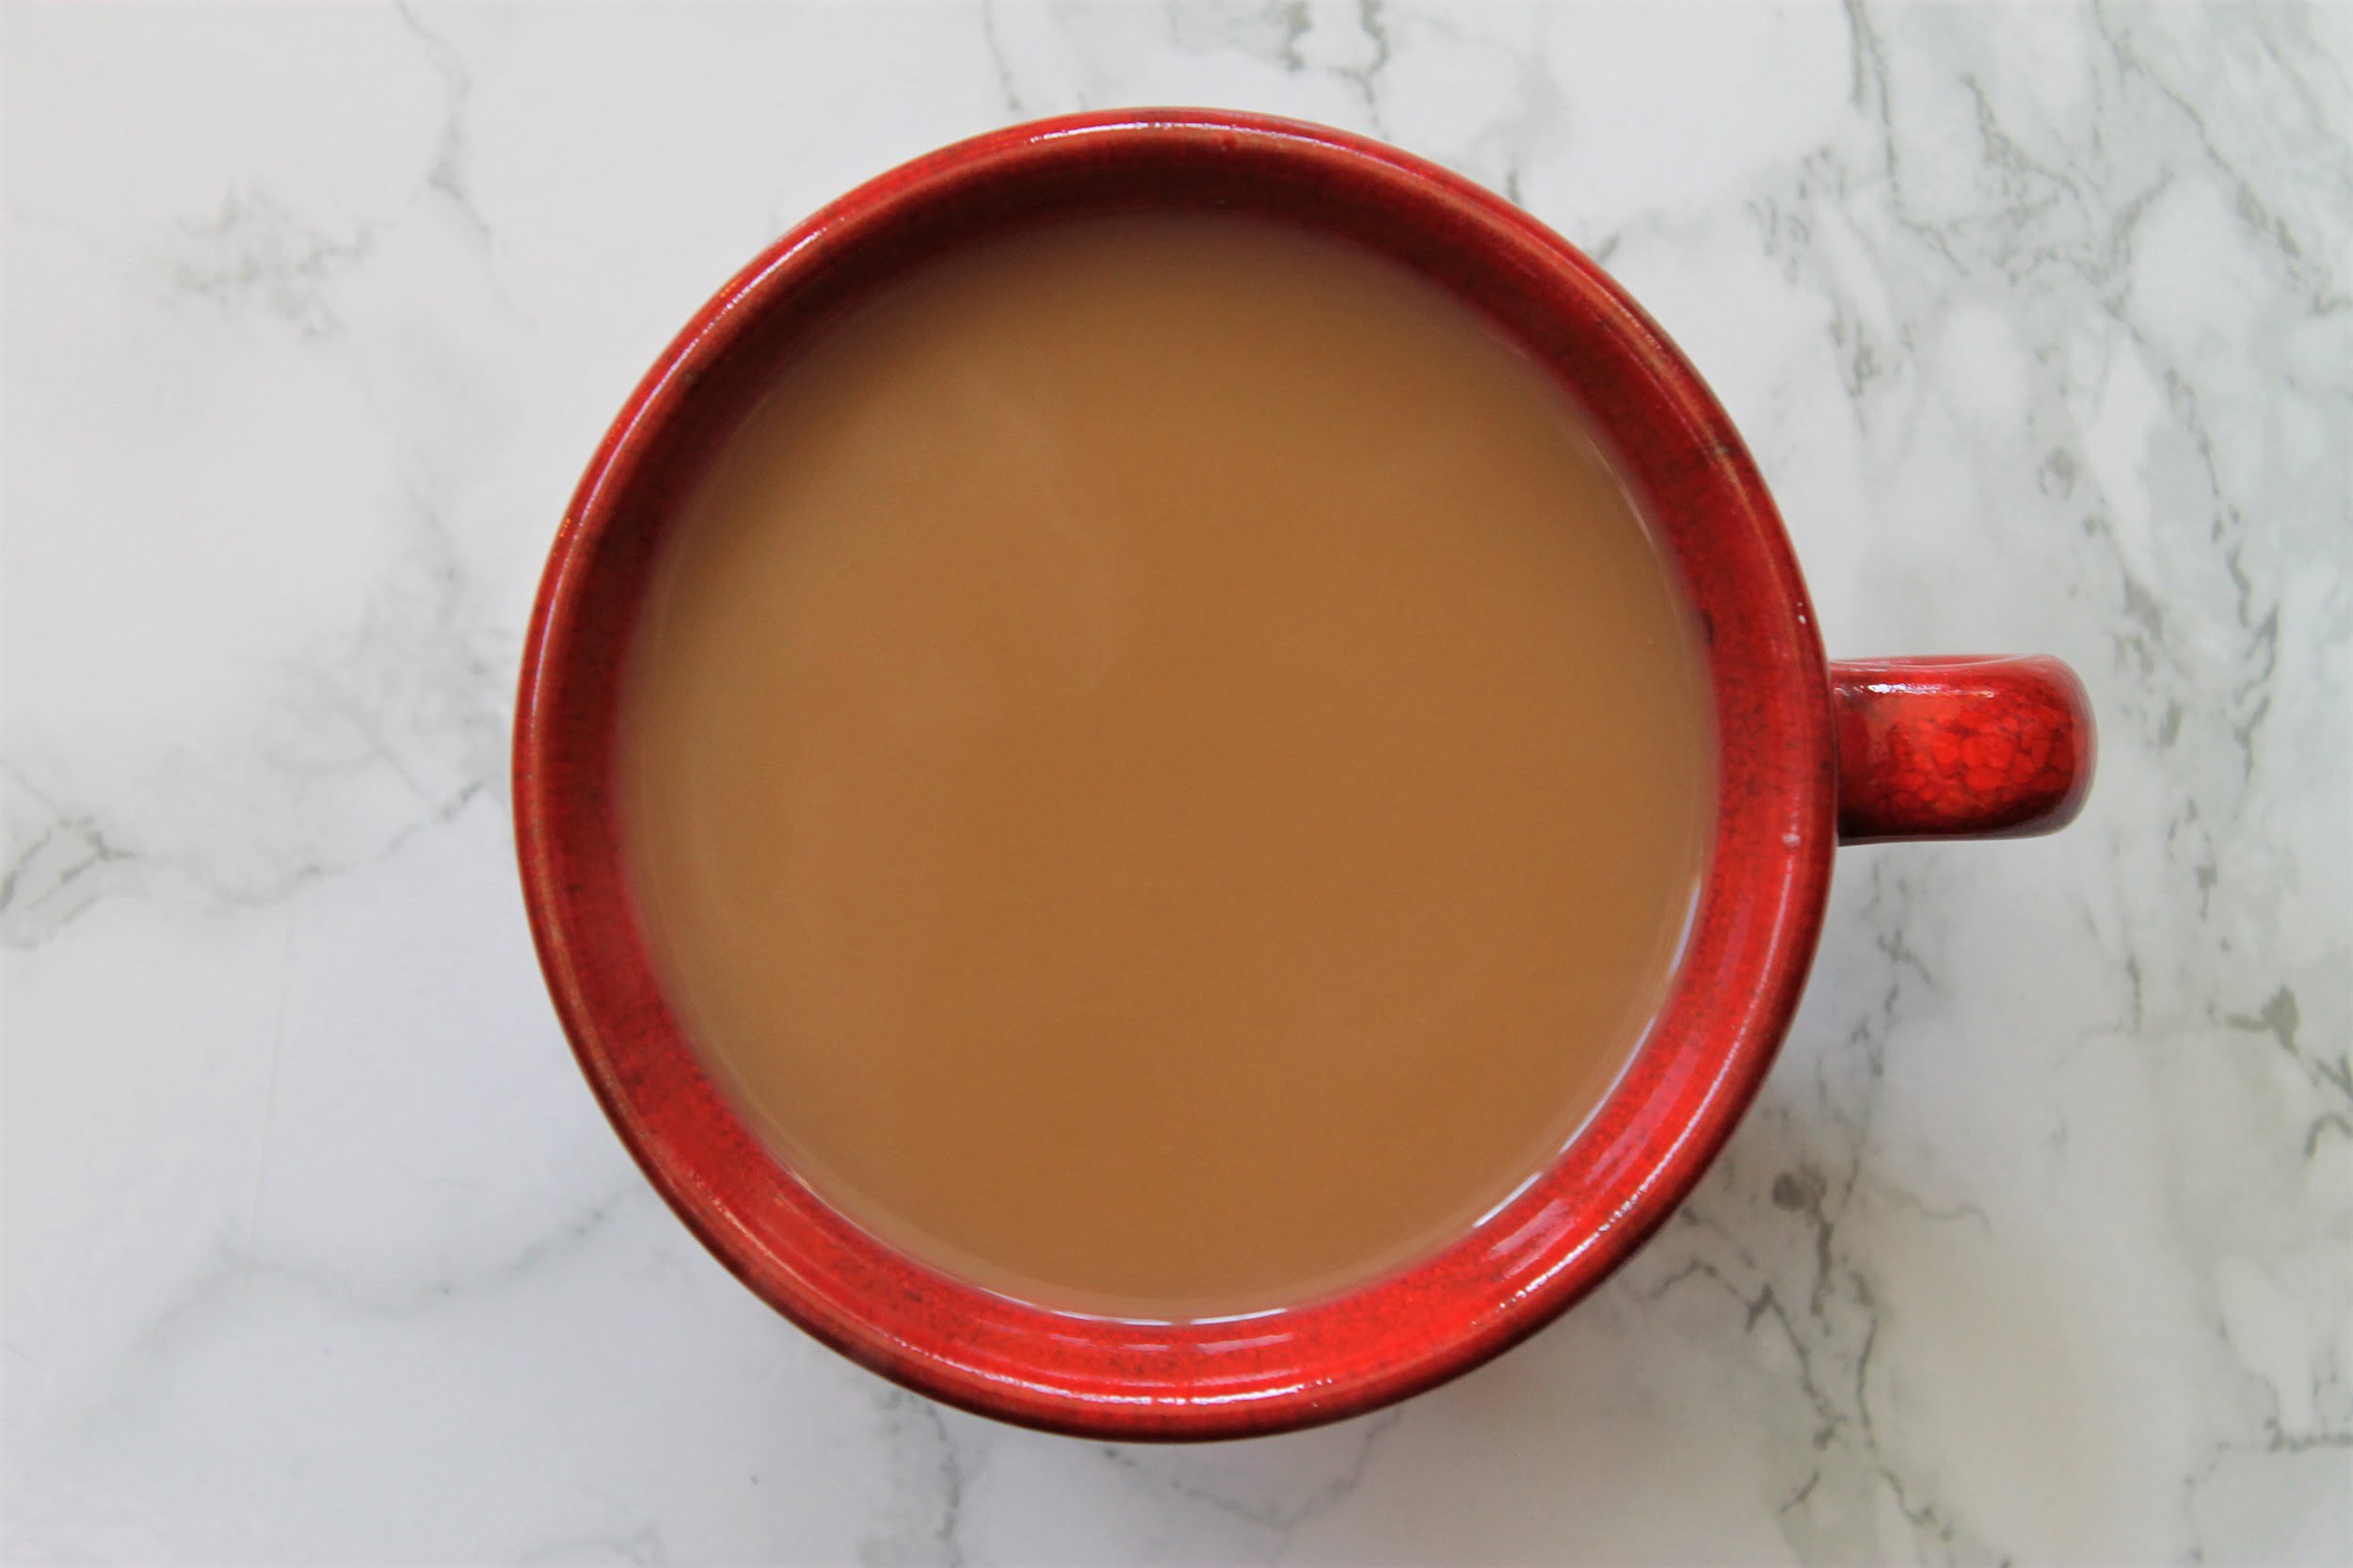 milk tea in red teacup